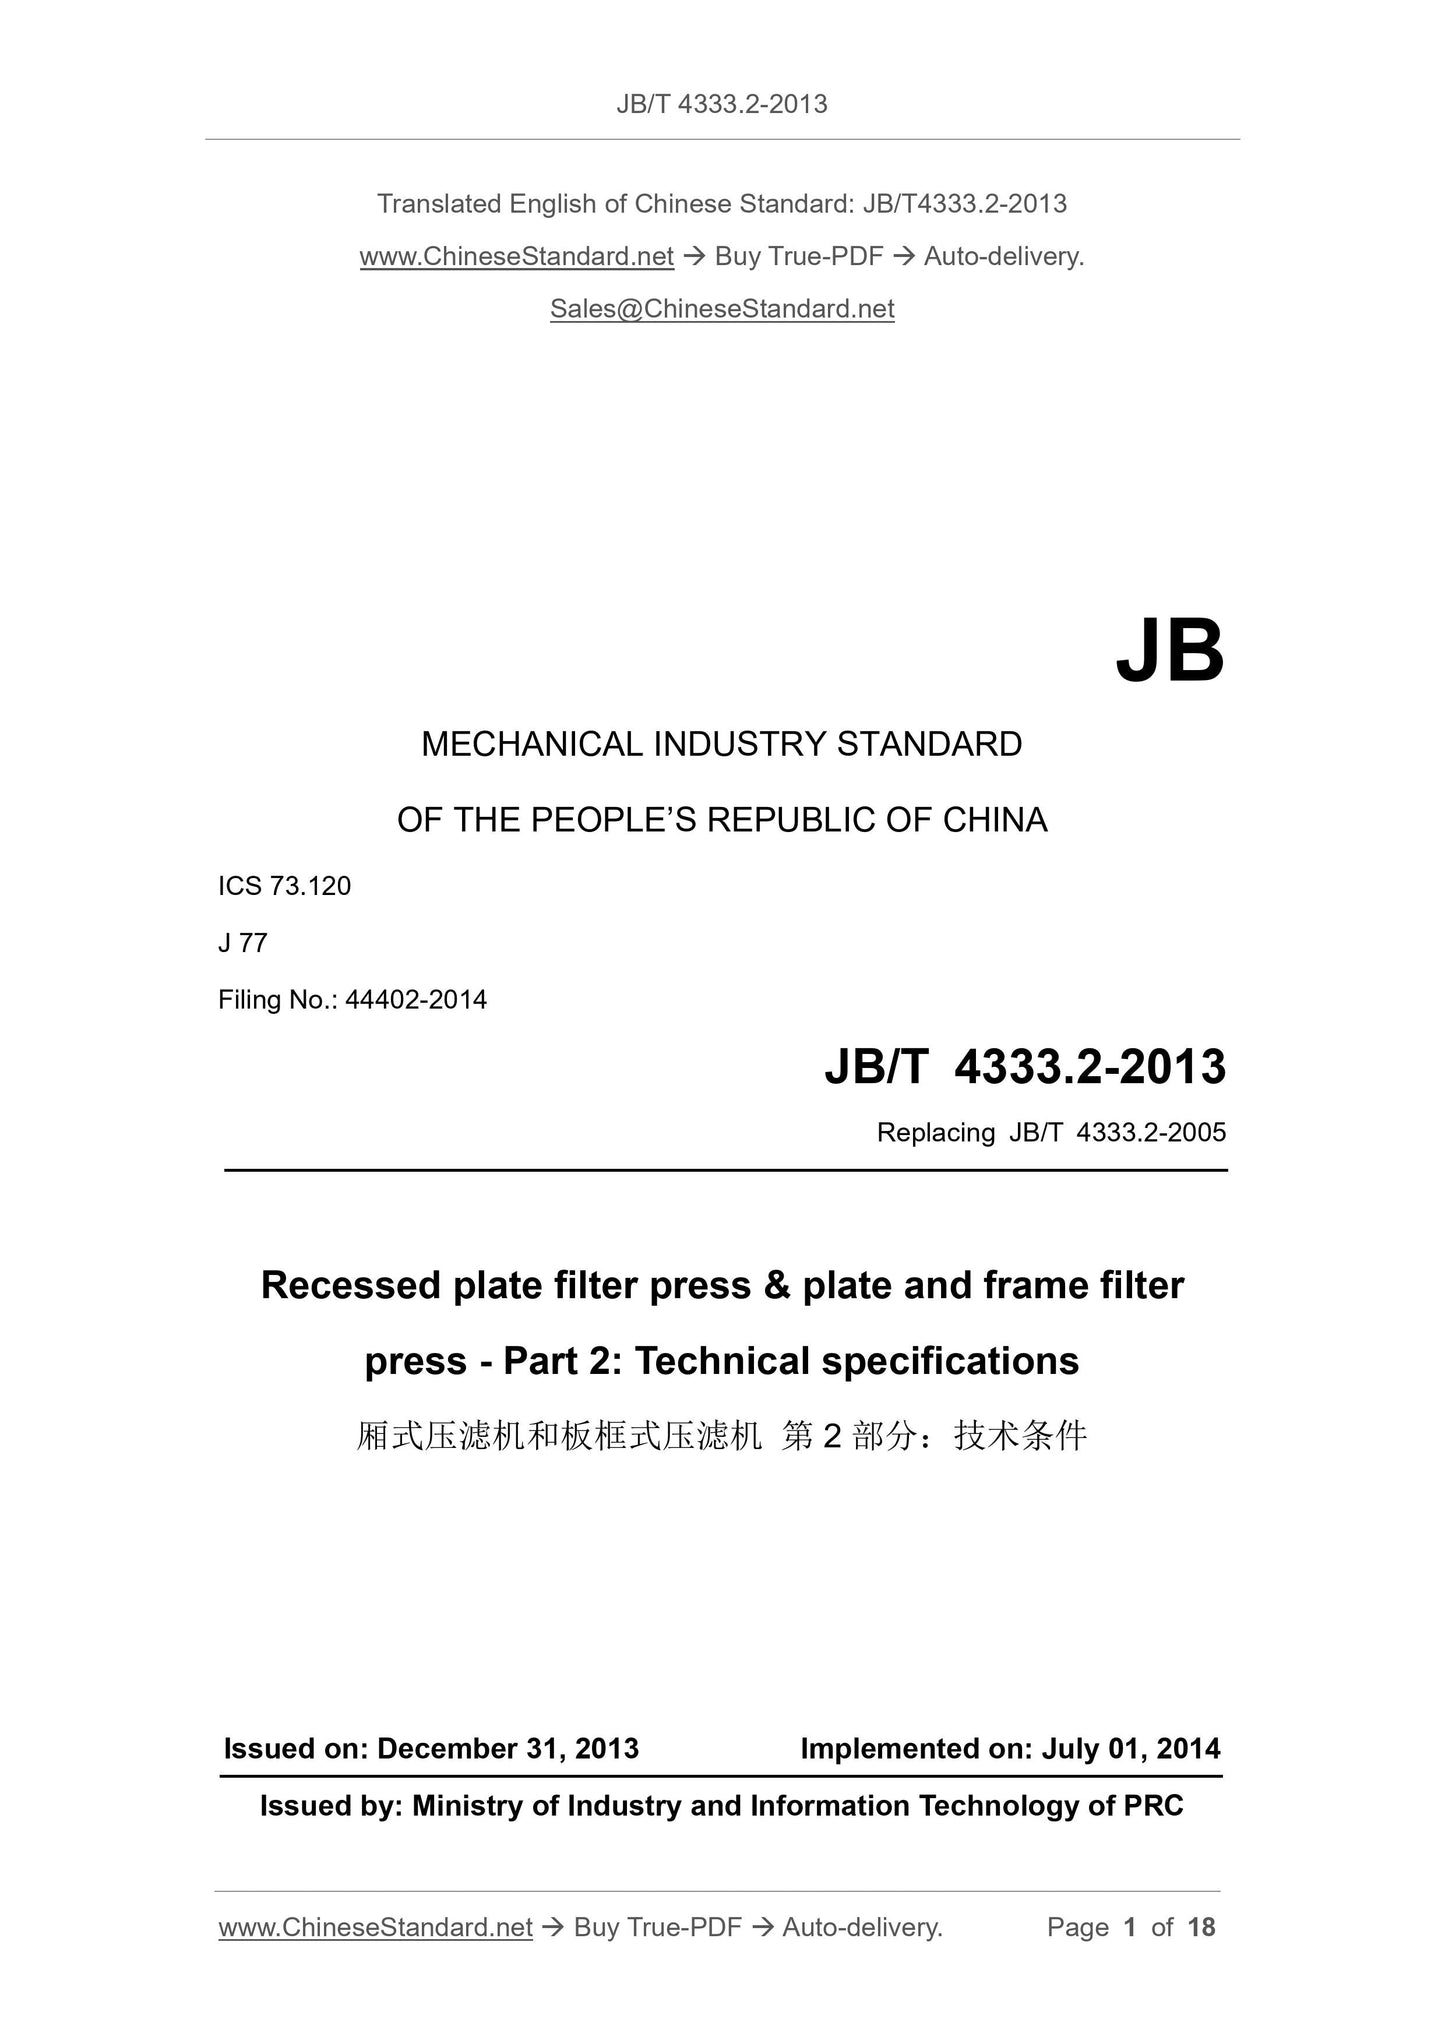 JB/T 4333.2-2013 Page 1